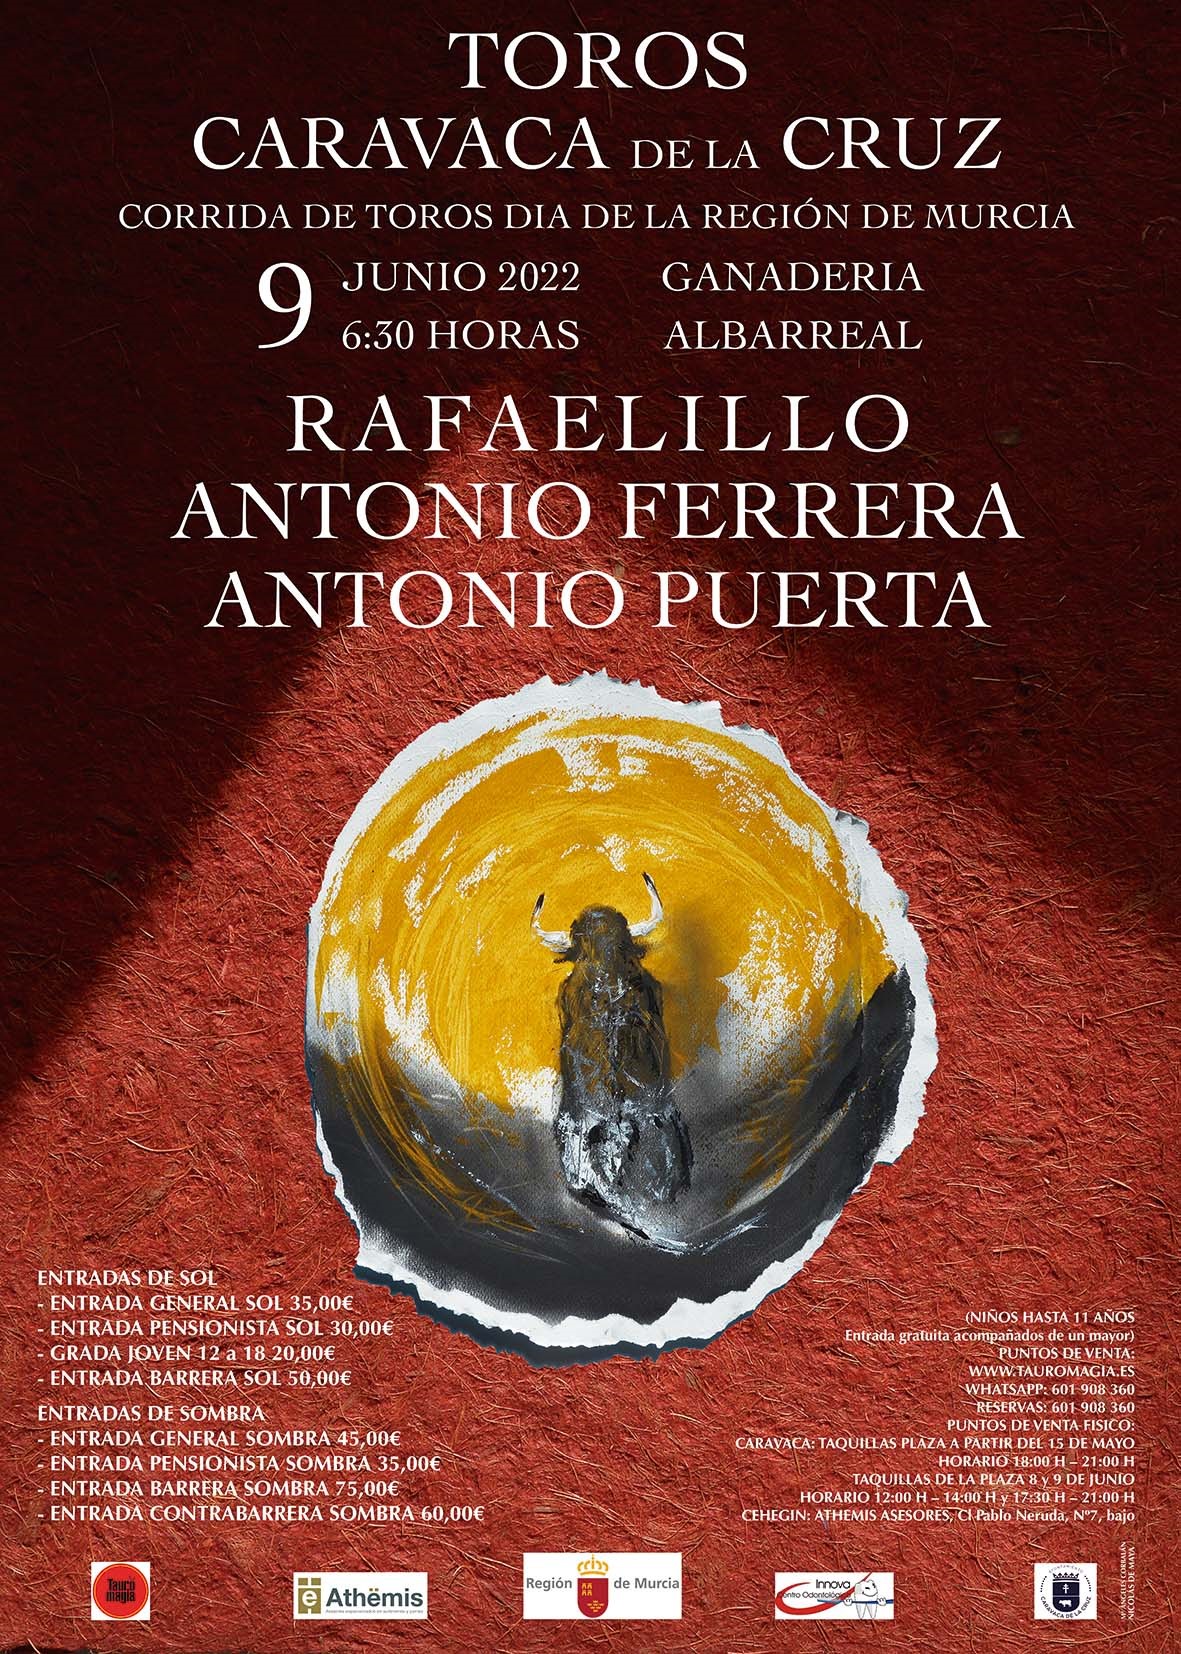 Toros Caravaca de la Cruz 9. Juni 2022.